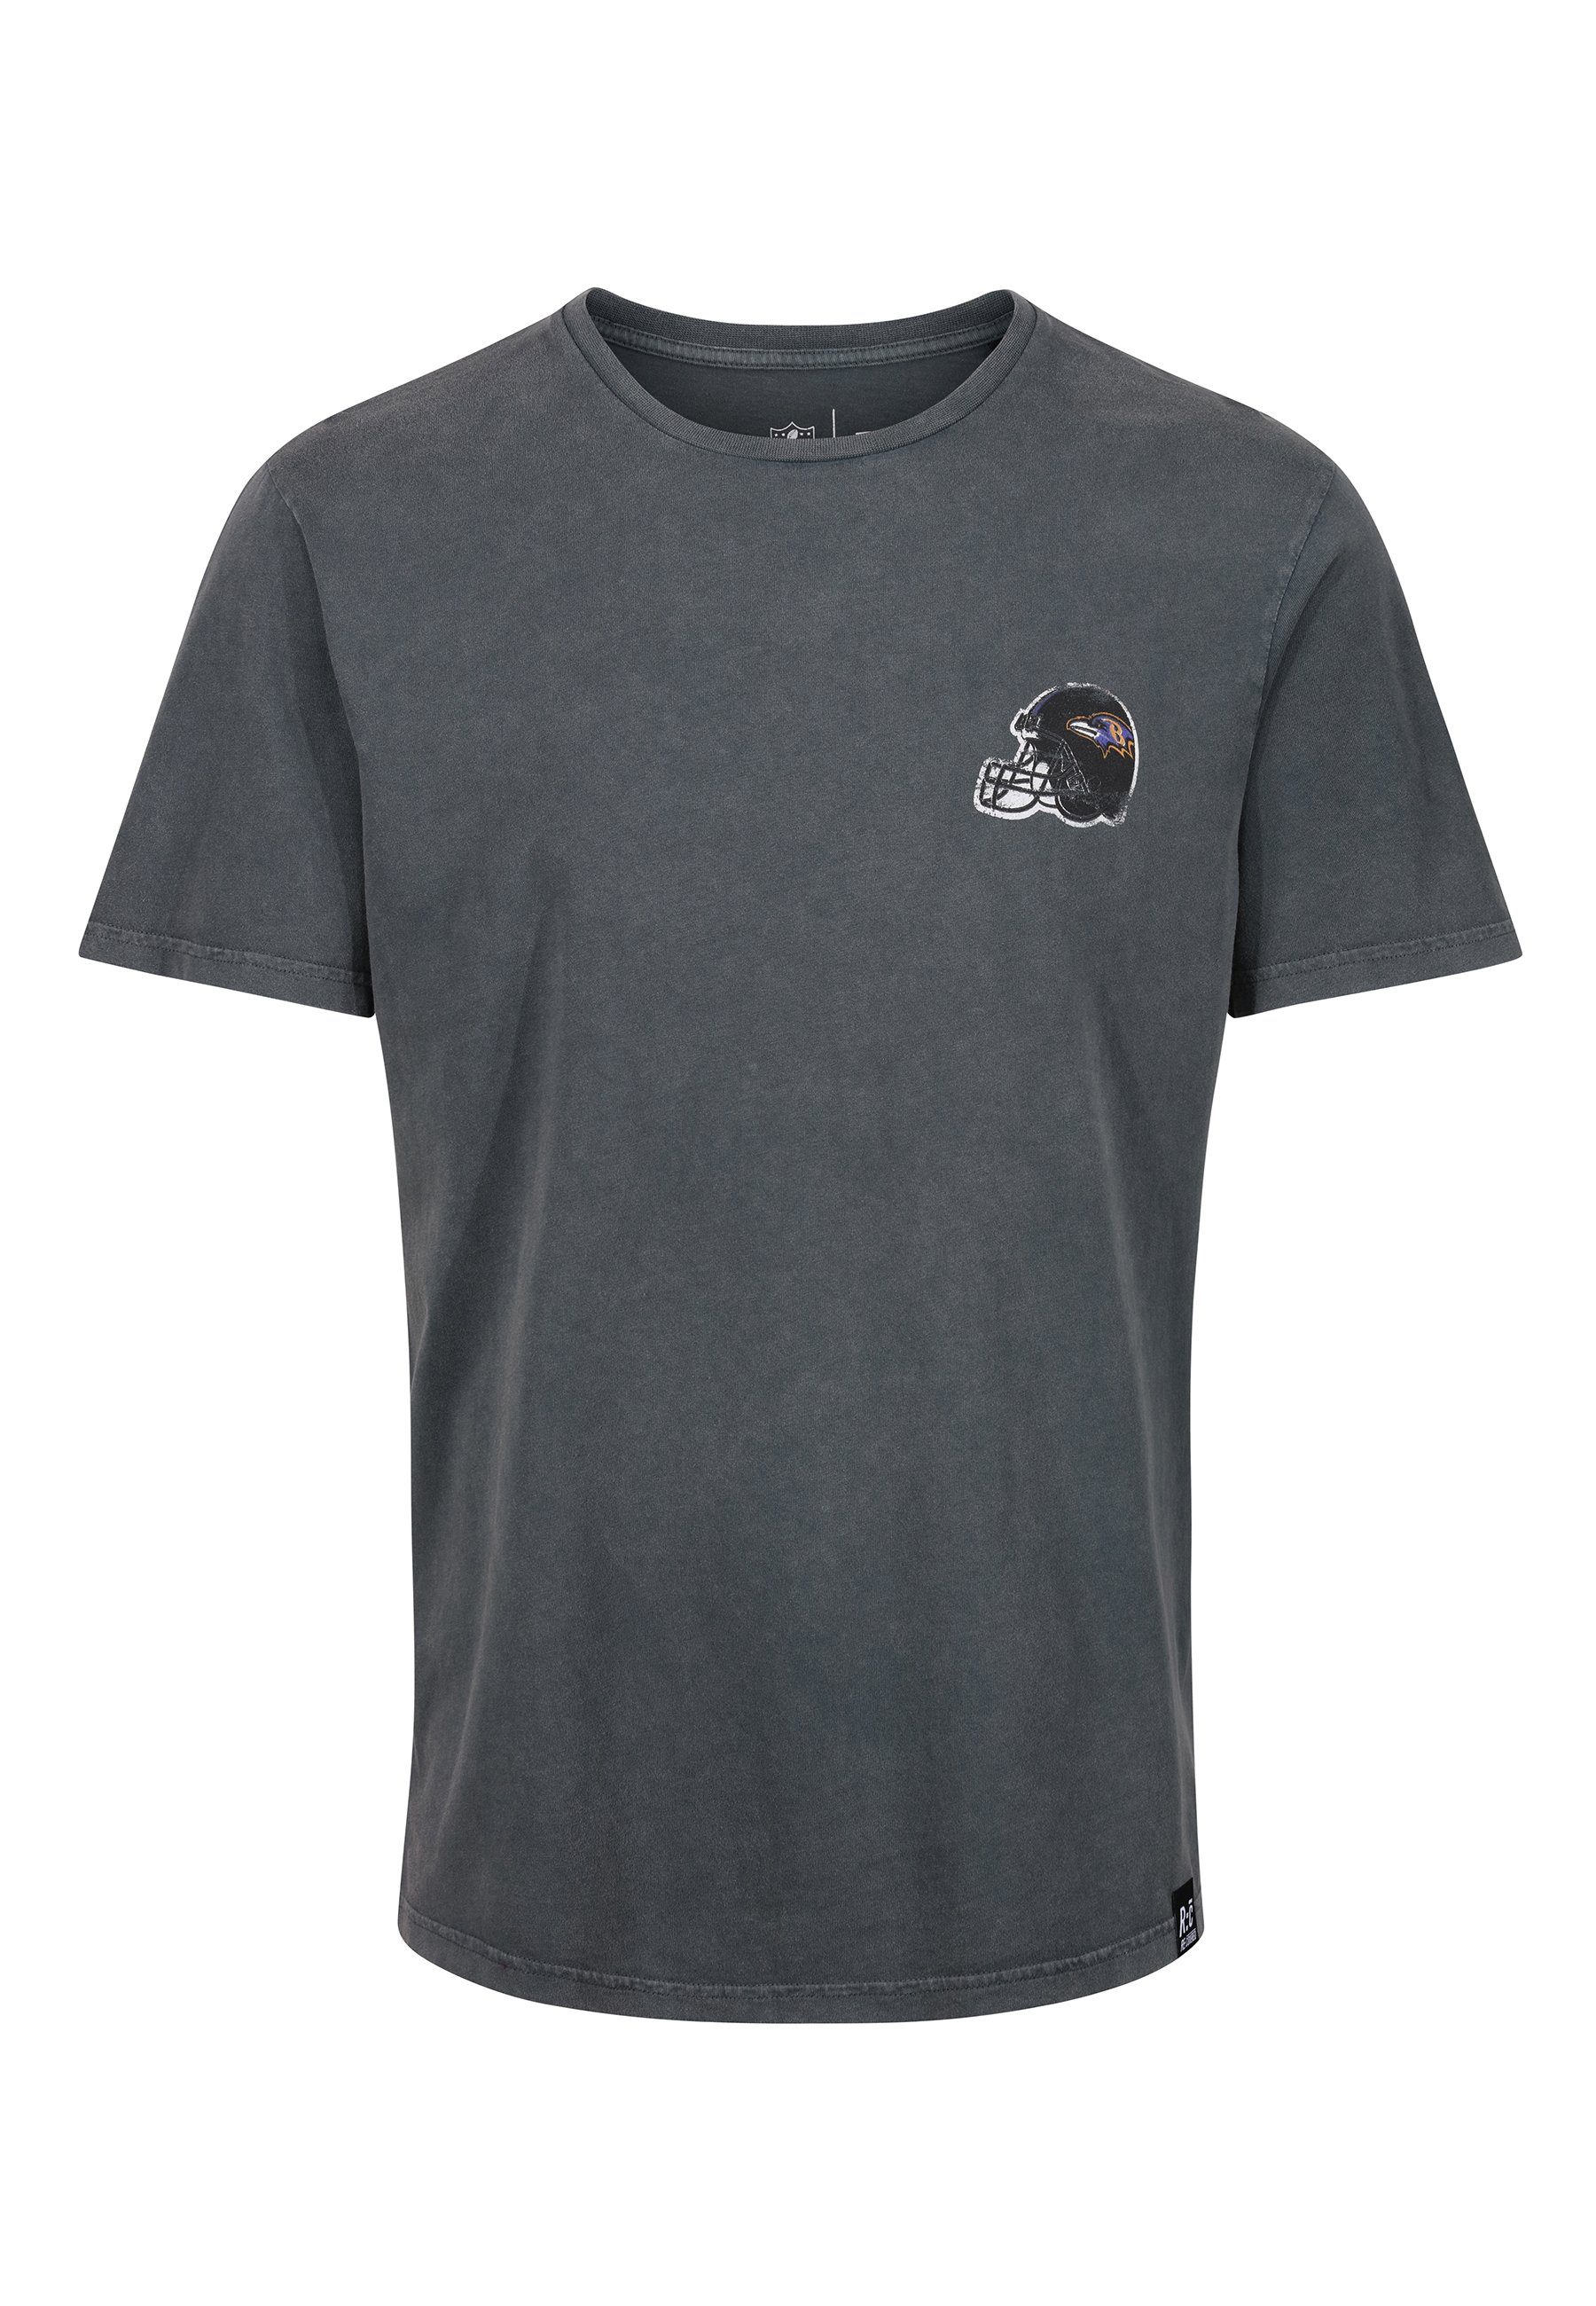 zertifizierte T-Shirt RAVENS GOTS NFL Bio-Baumwolle COLLEGE Recovered